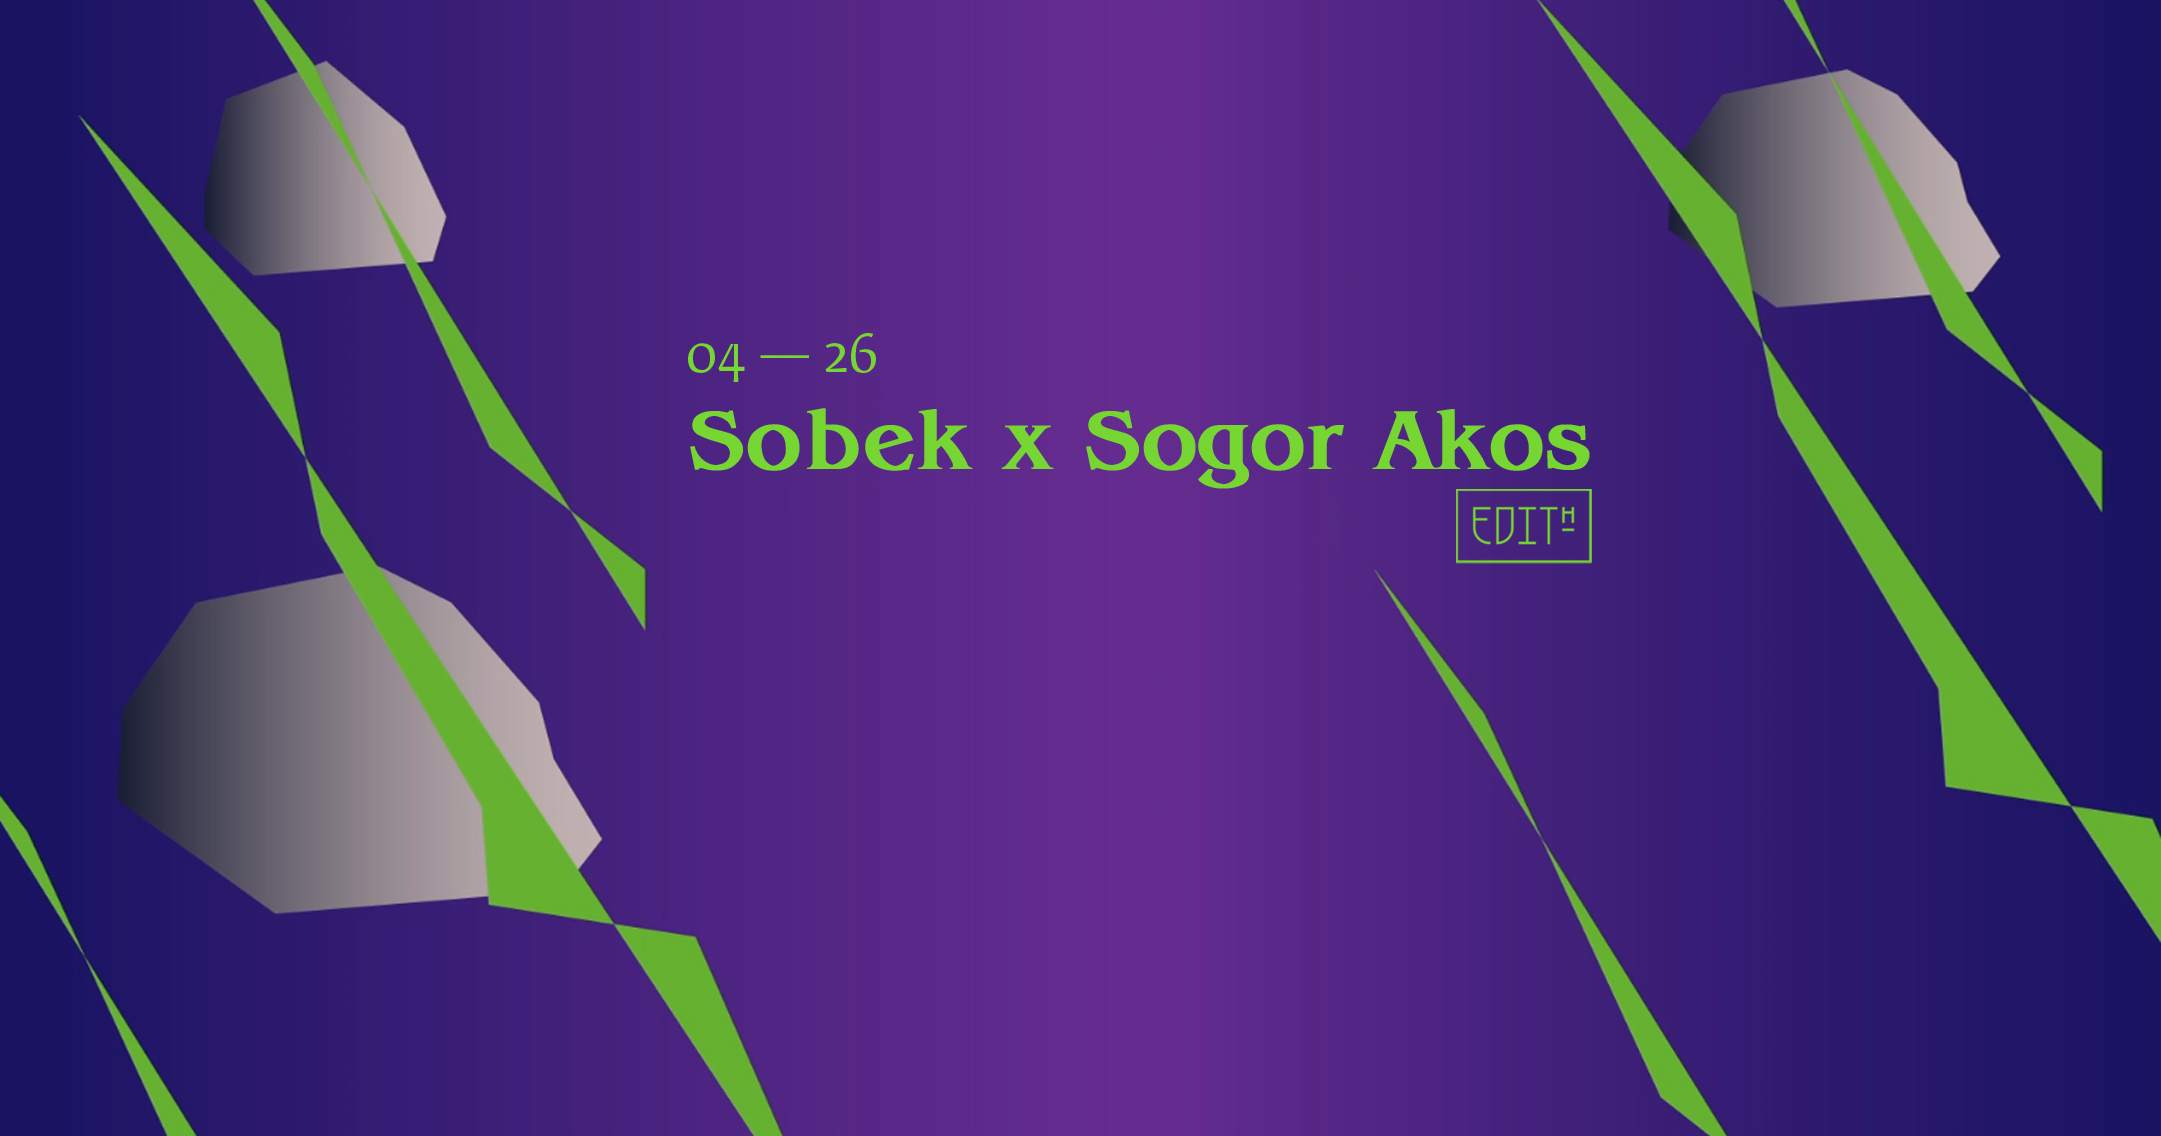 Edith — Sobek / Sogor Akos - フライヤー表